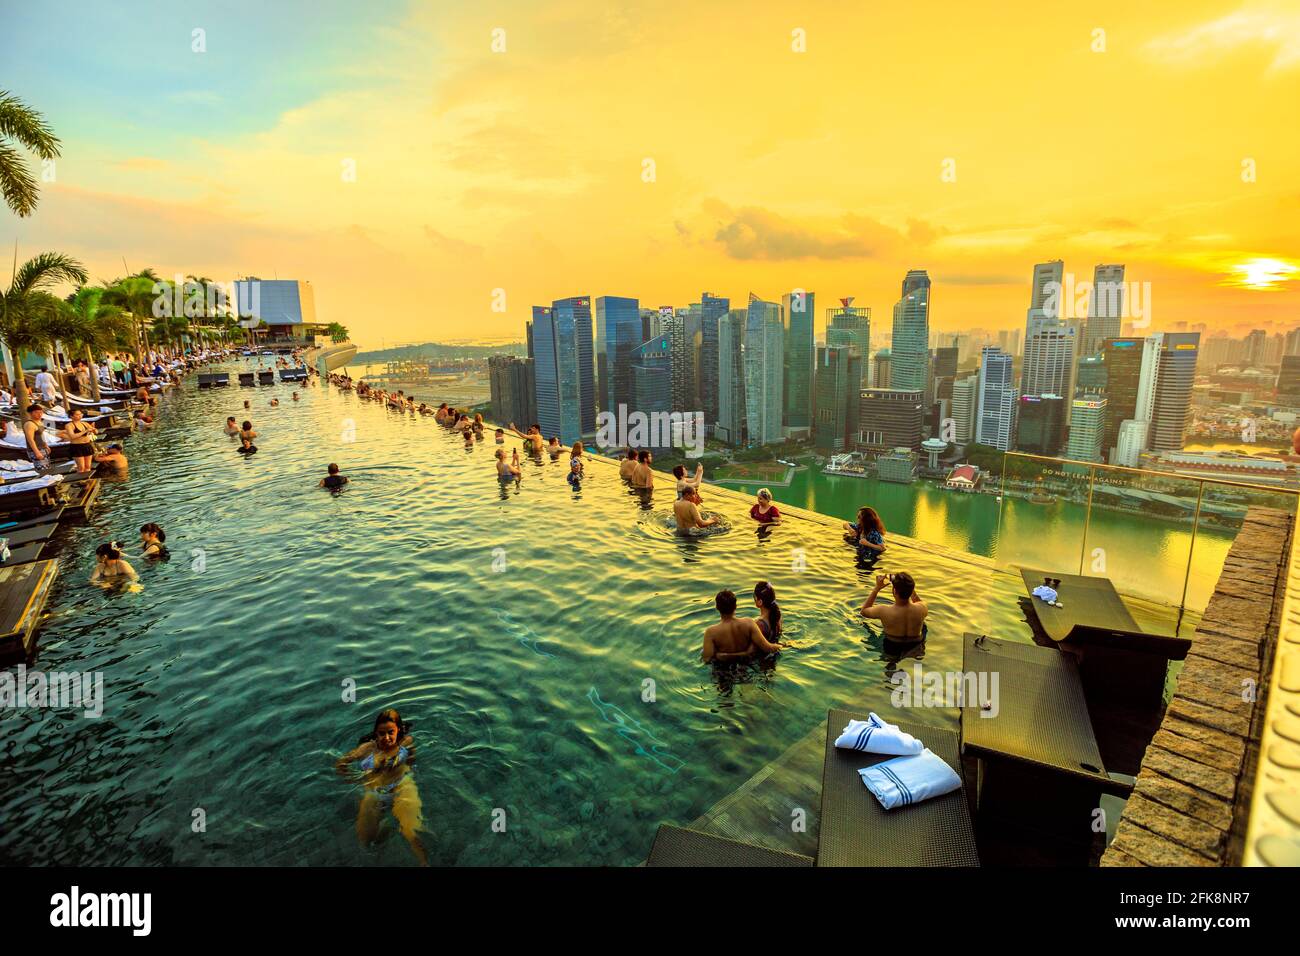 Singapur - 3. Mai 2018: Paare und Touristen machen Selfie im berühmten Infinity Pool des Skyparks, der das Marina Bay Sands Hotel übertauft. Finanzwesen Stockfoto